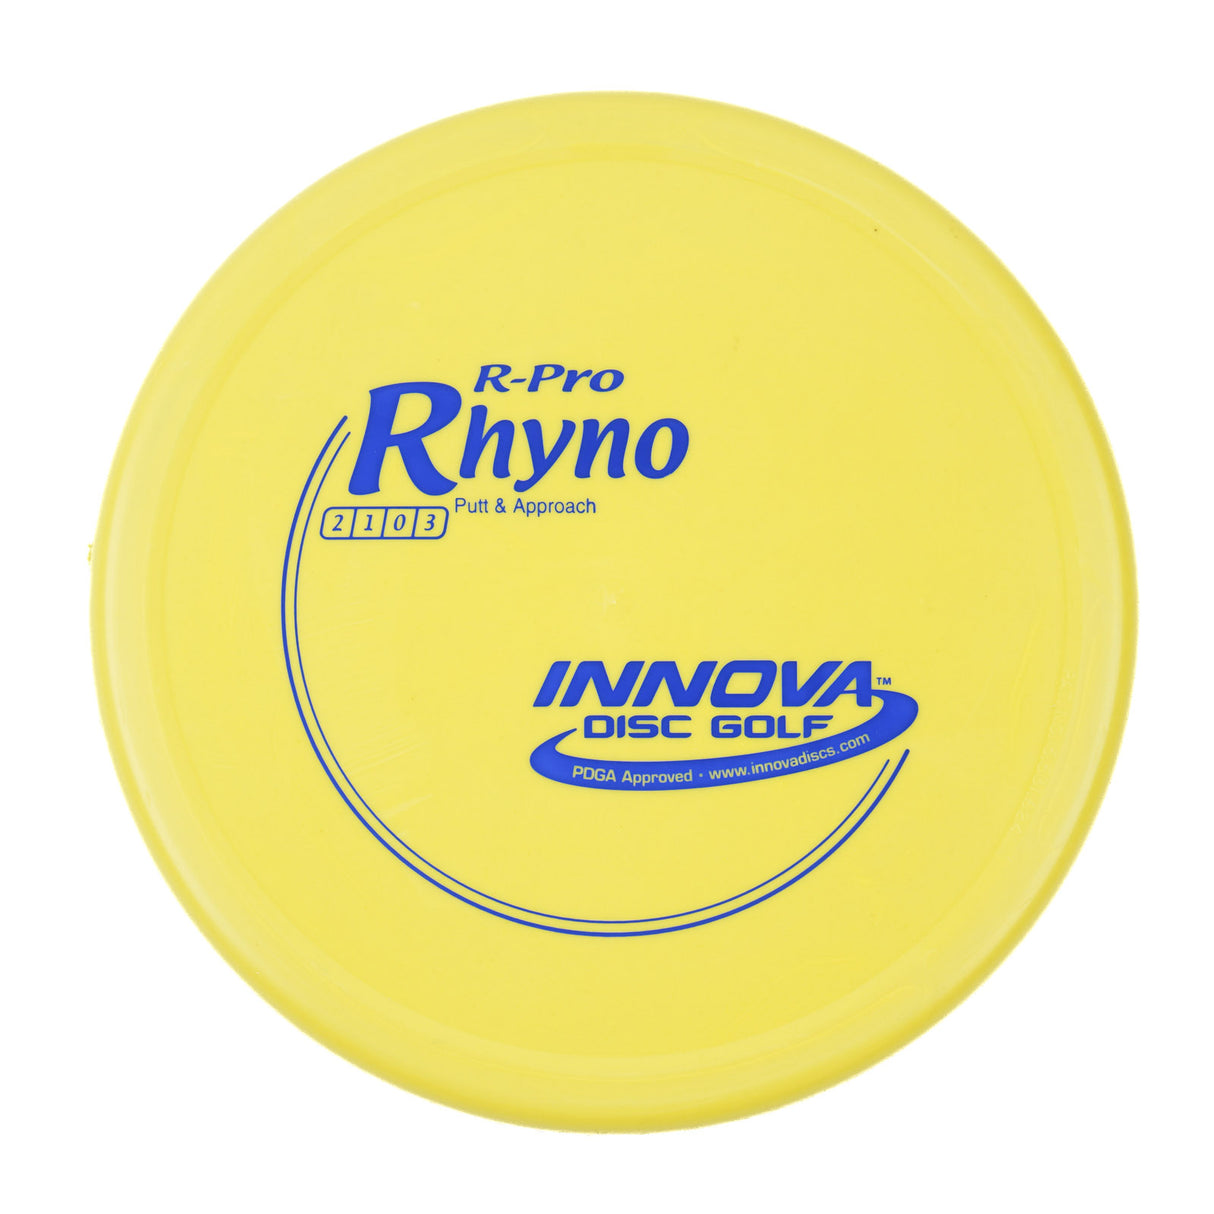 Innova Rhyno - R-Pro 168g | Style 0001